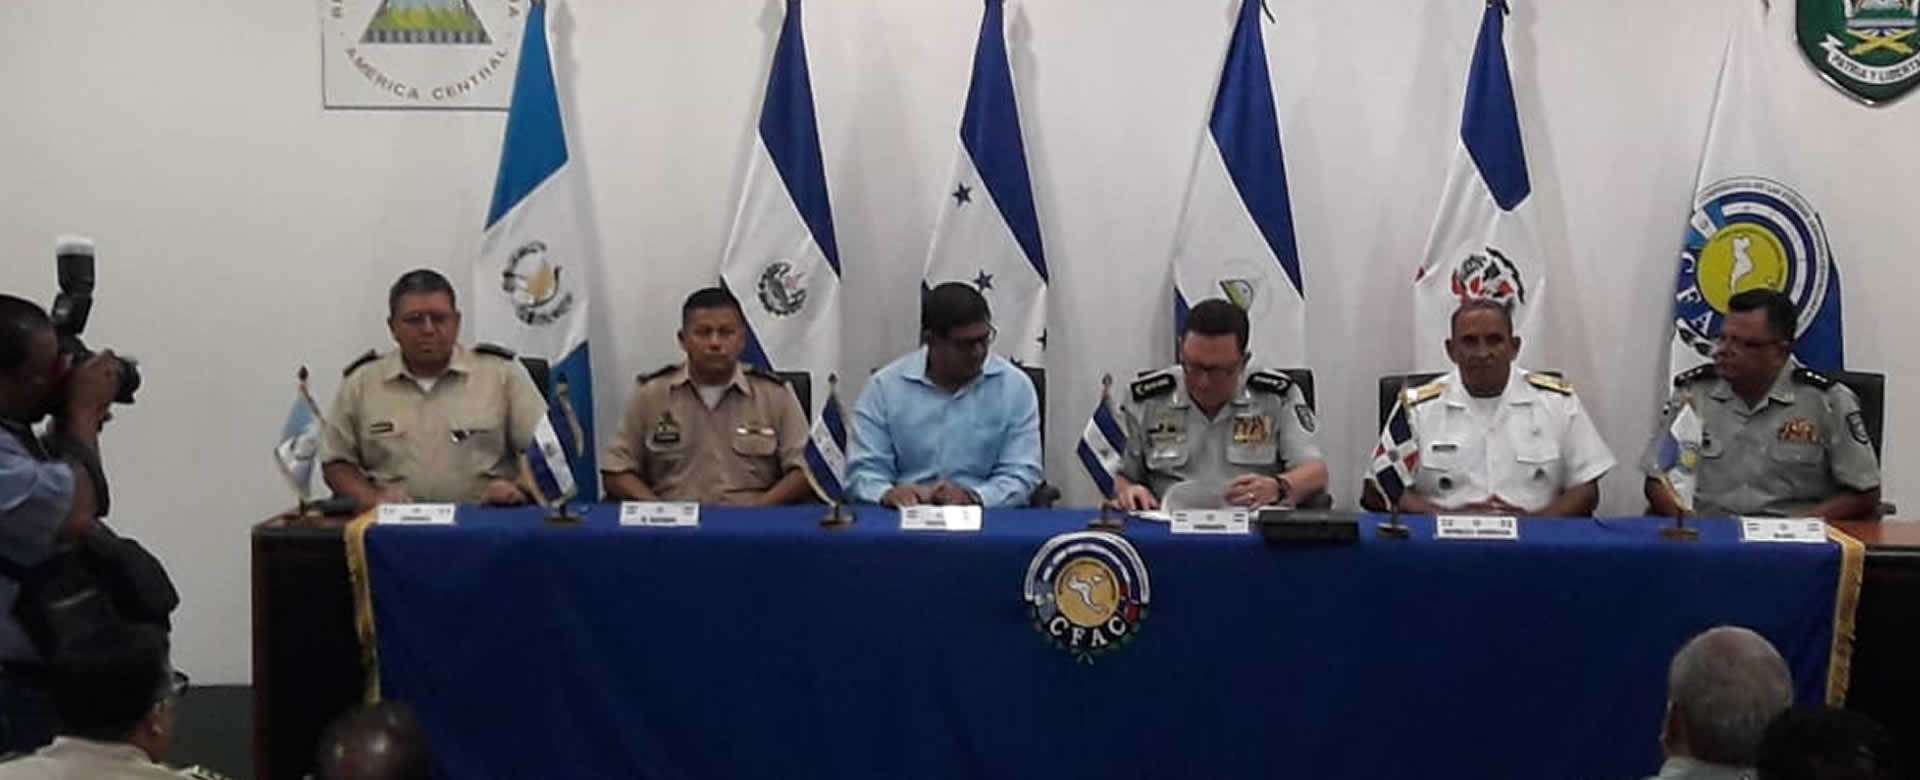 Nicaragua presidencia protempore CFAC